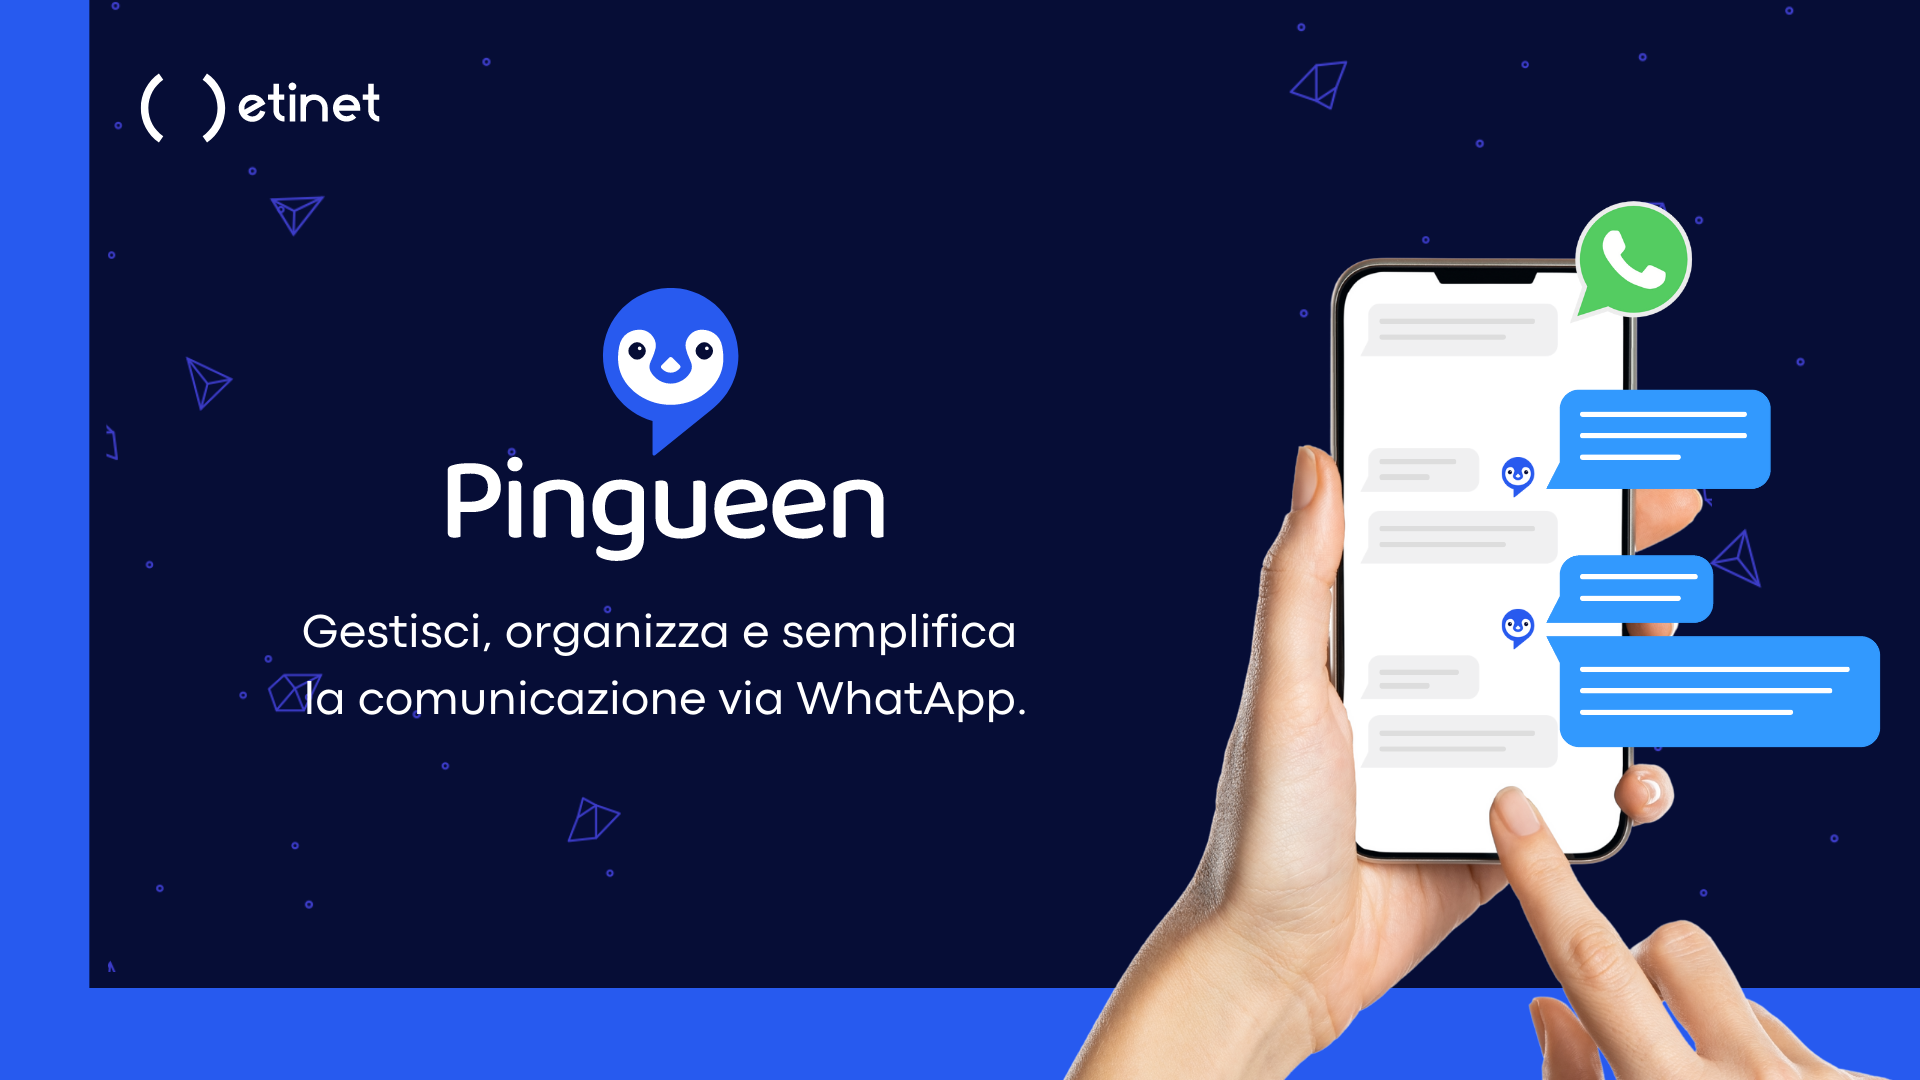 Pingueen piattaforma per fare marketing su whatsapp api